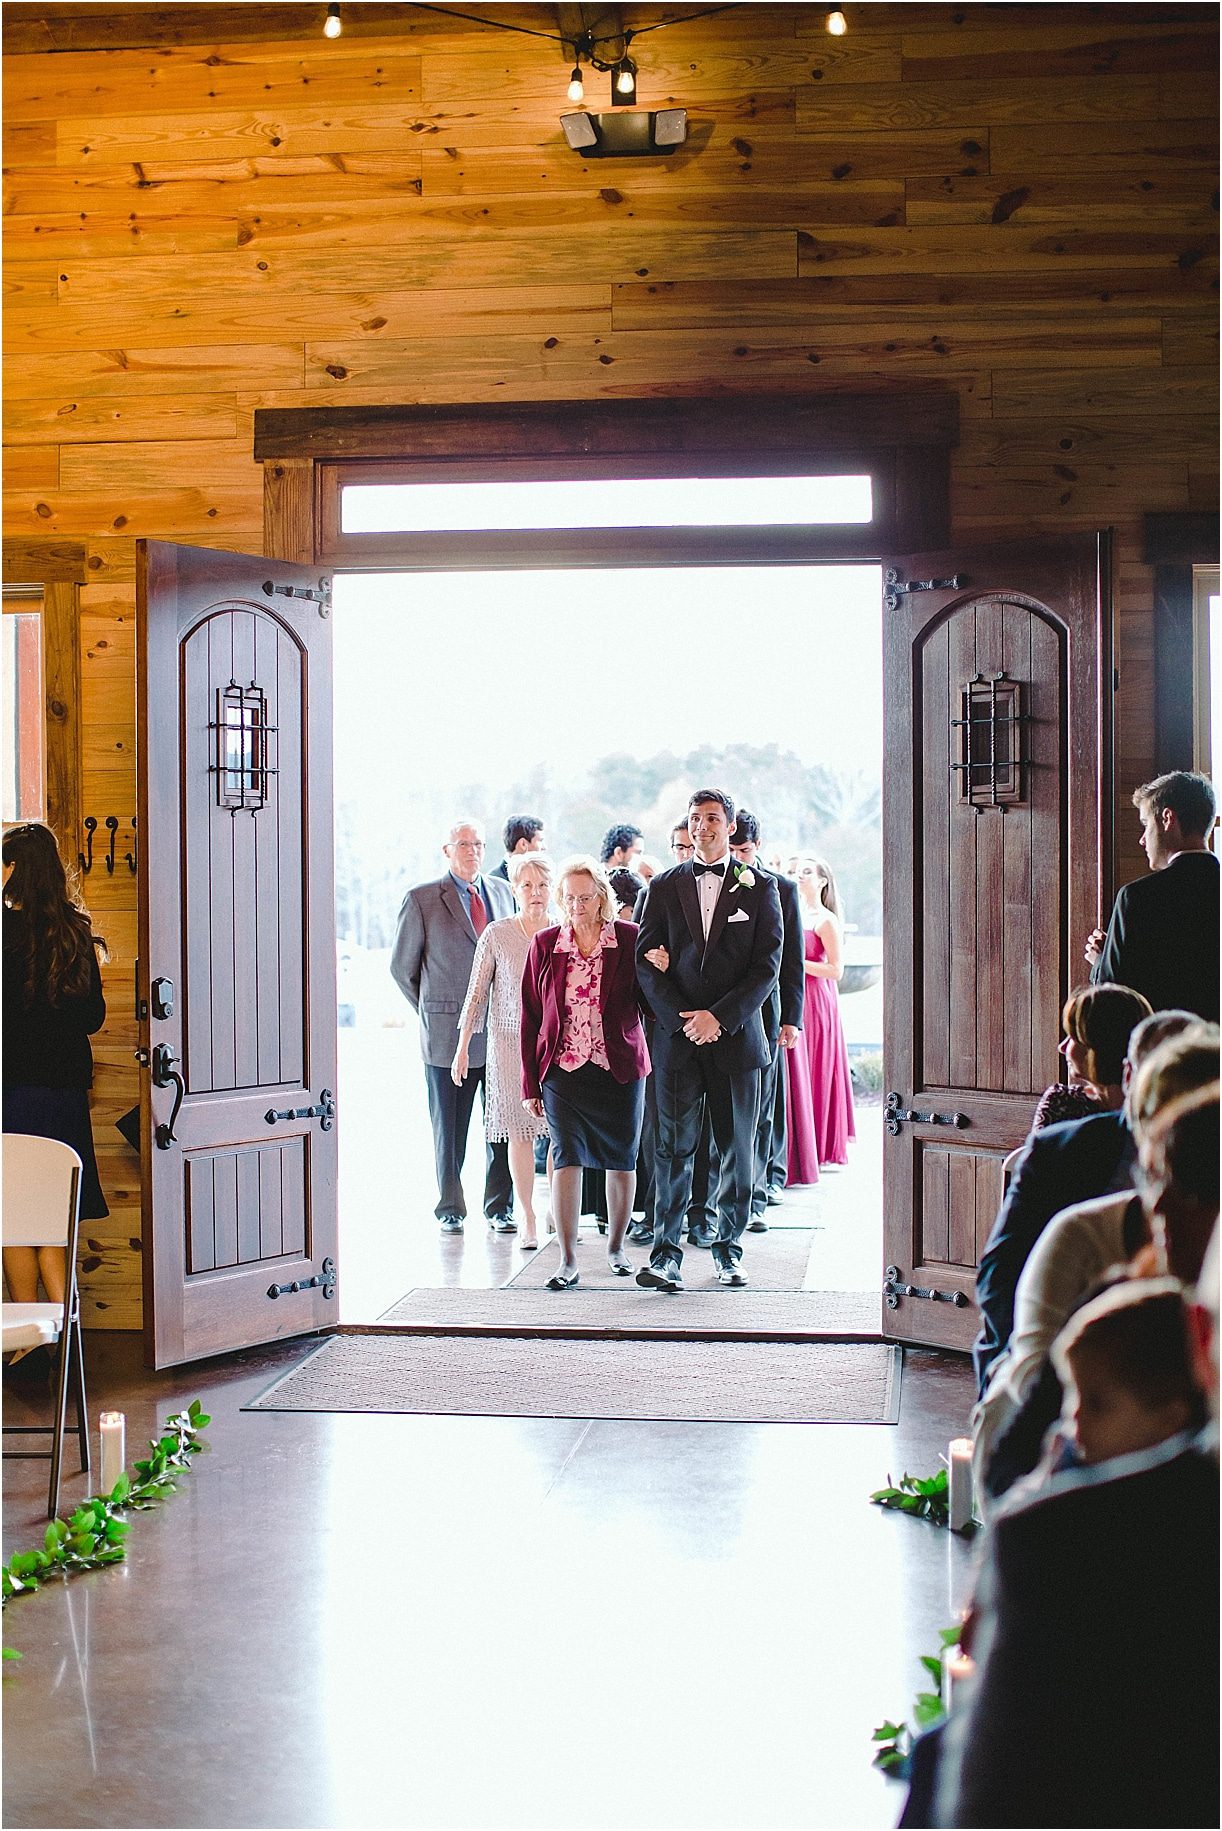 Farm Wedding with DIY Details | Hill City Bride Virginia Wedding Blog